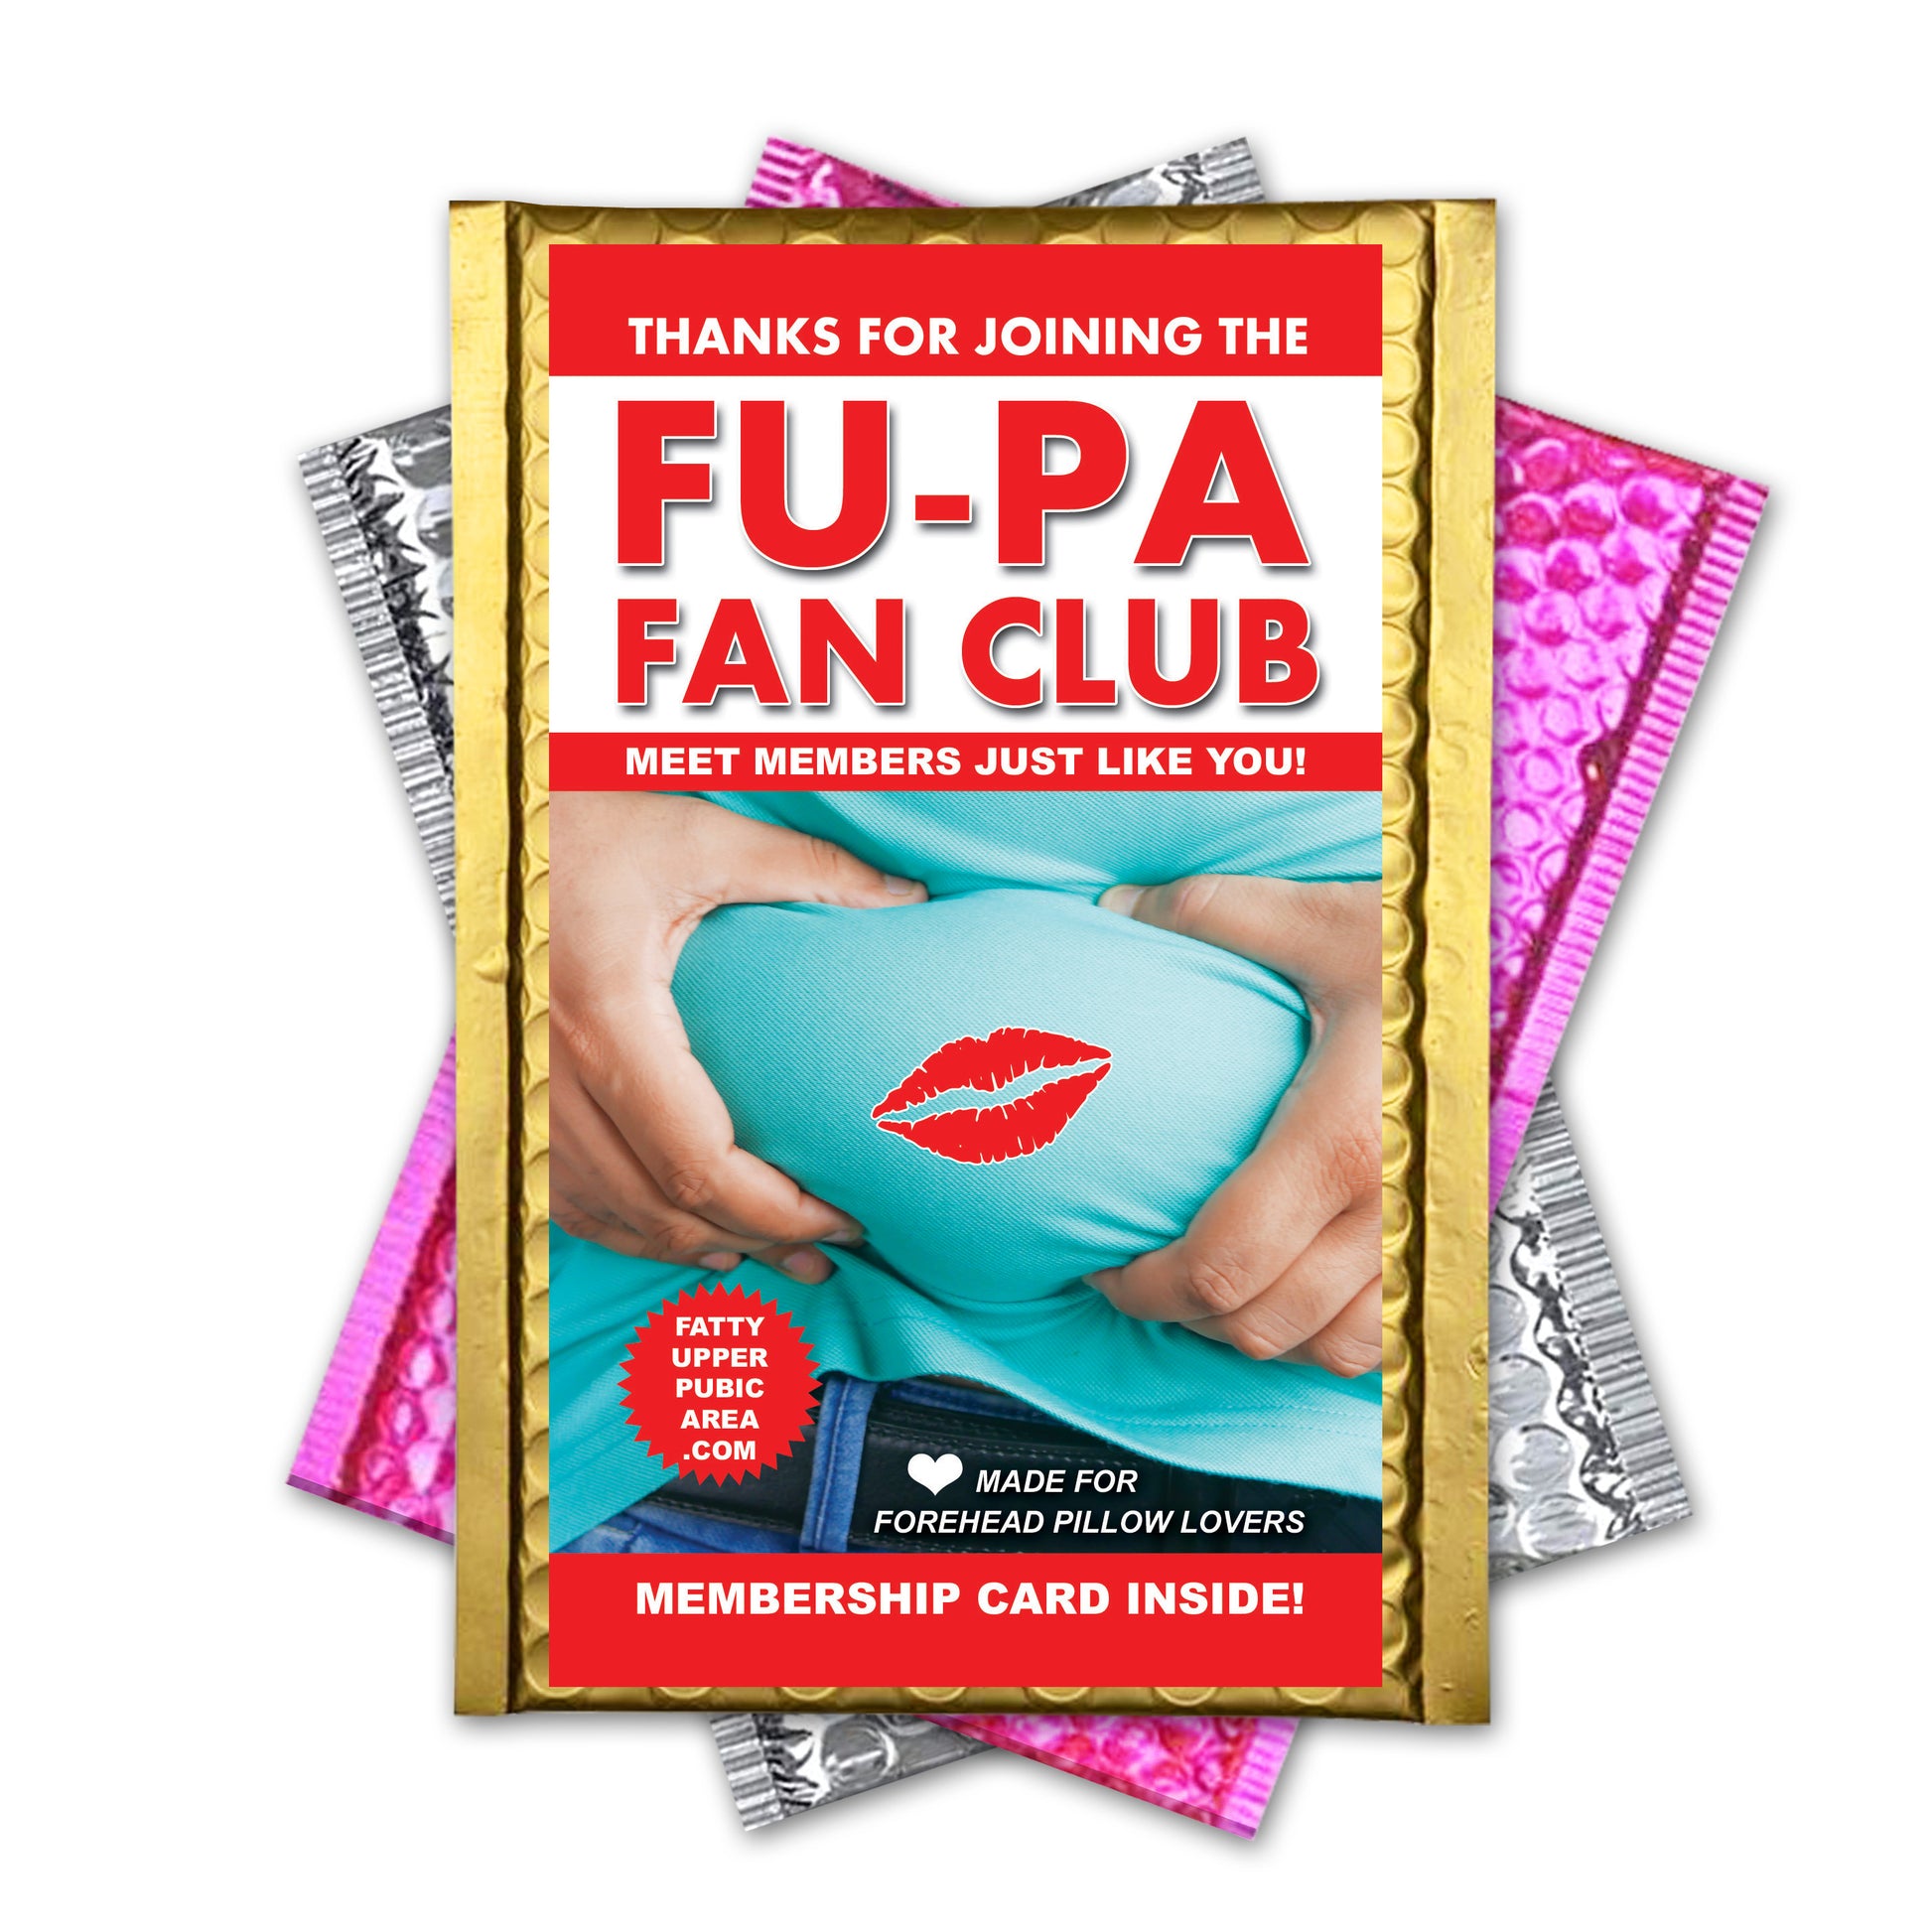 Fu-Pa Fan Club Prank Mail Joke